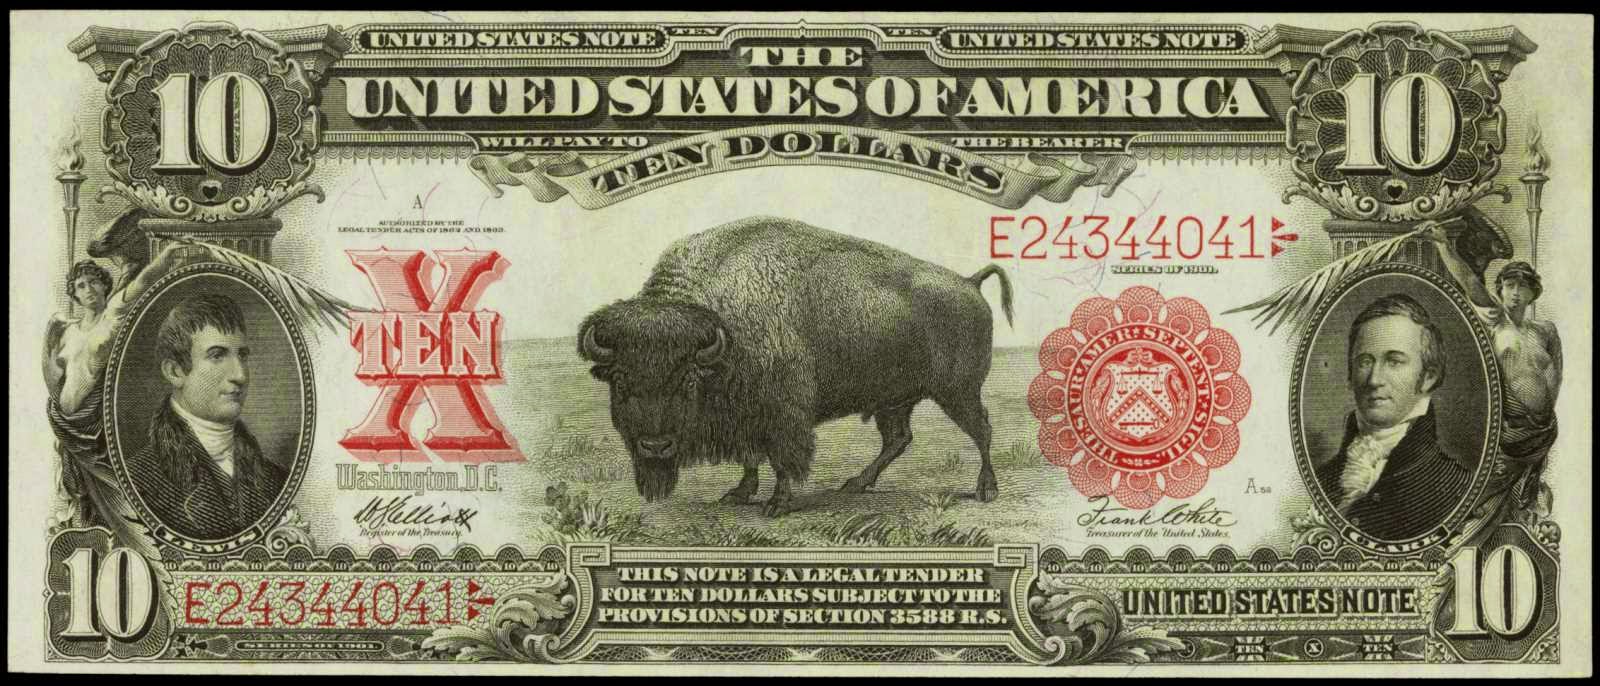 Old American banknotes nnn dd